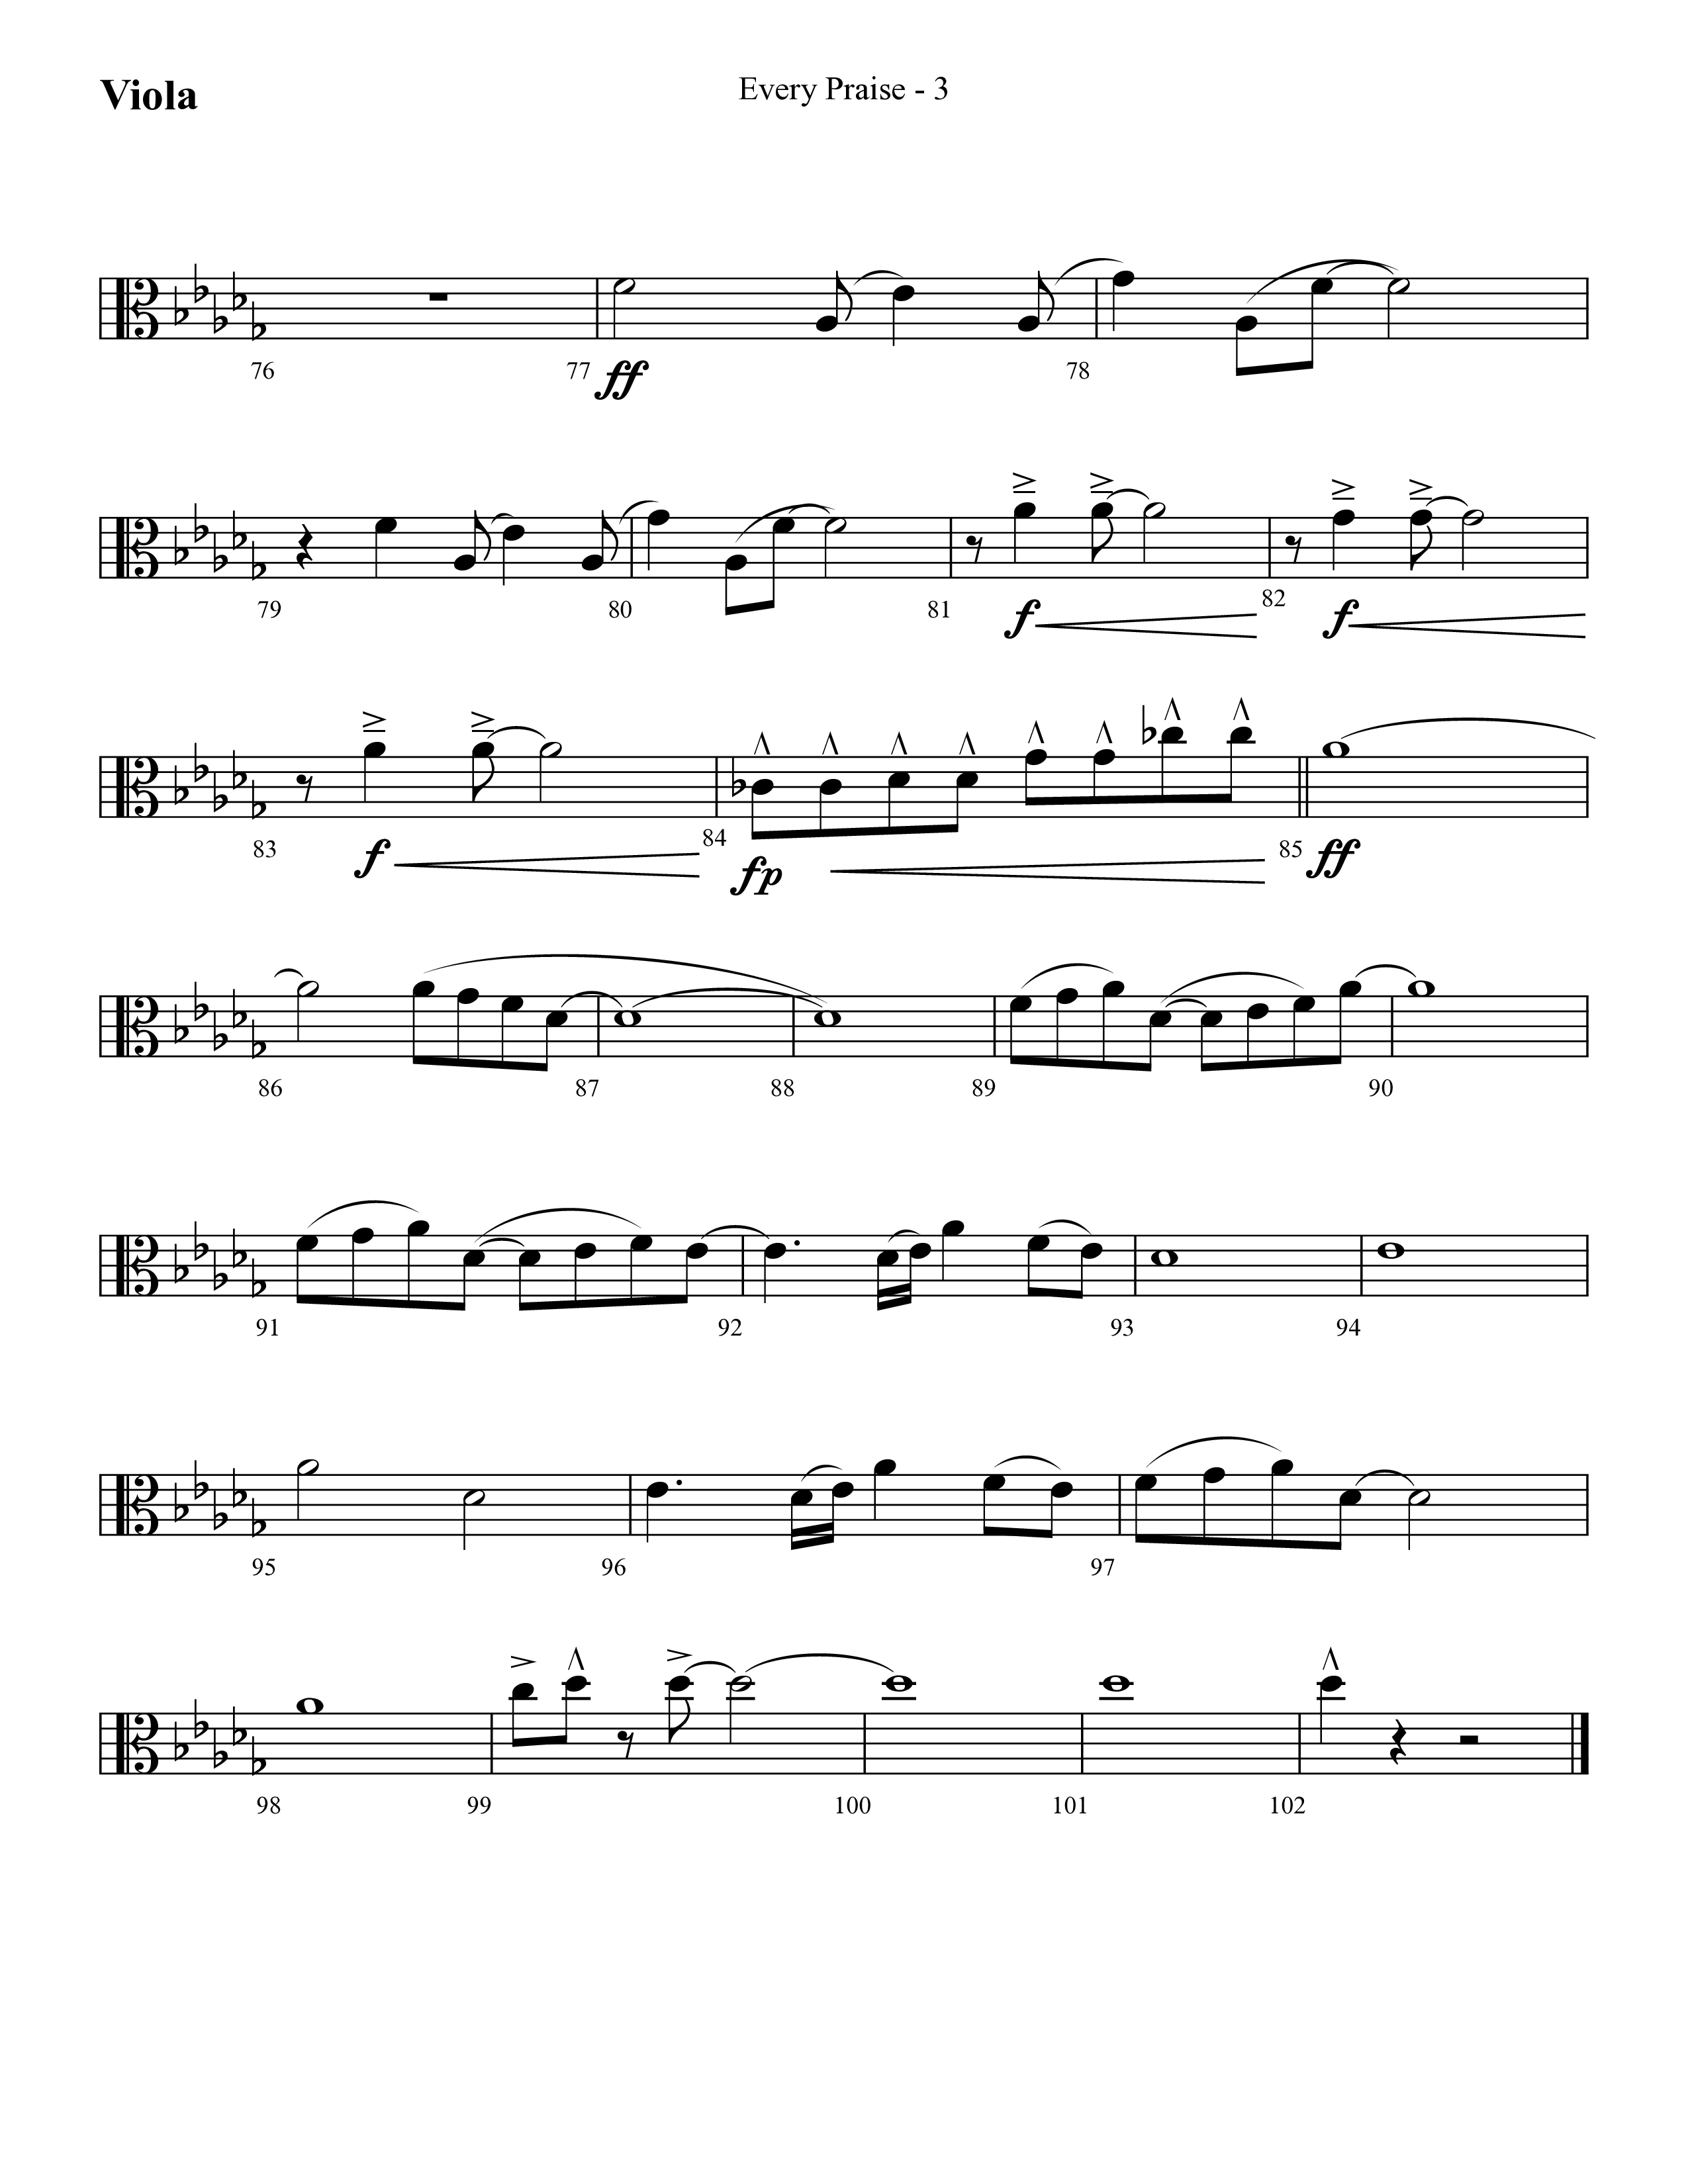 Every Praise (Choral Anthem SATB) Viola (Lifeway Choral / Arr. Cliff Duren)